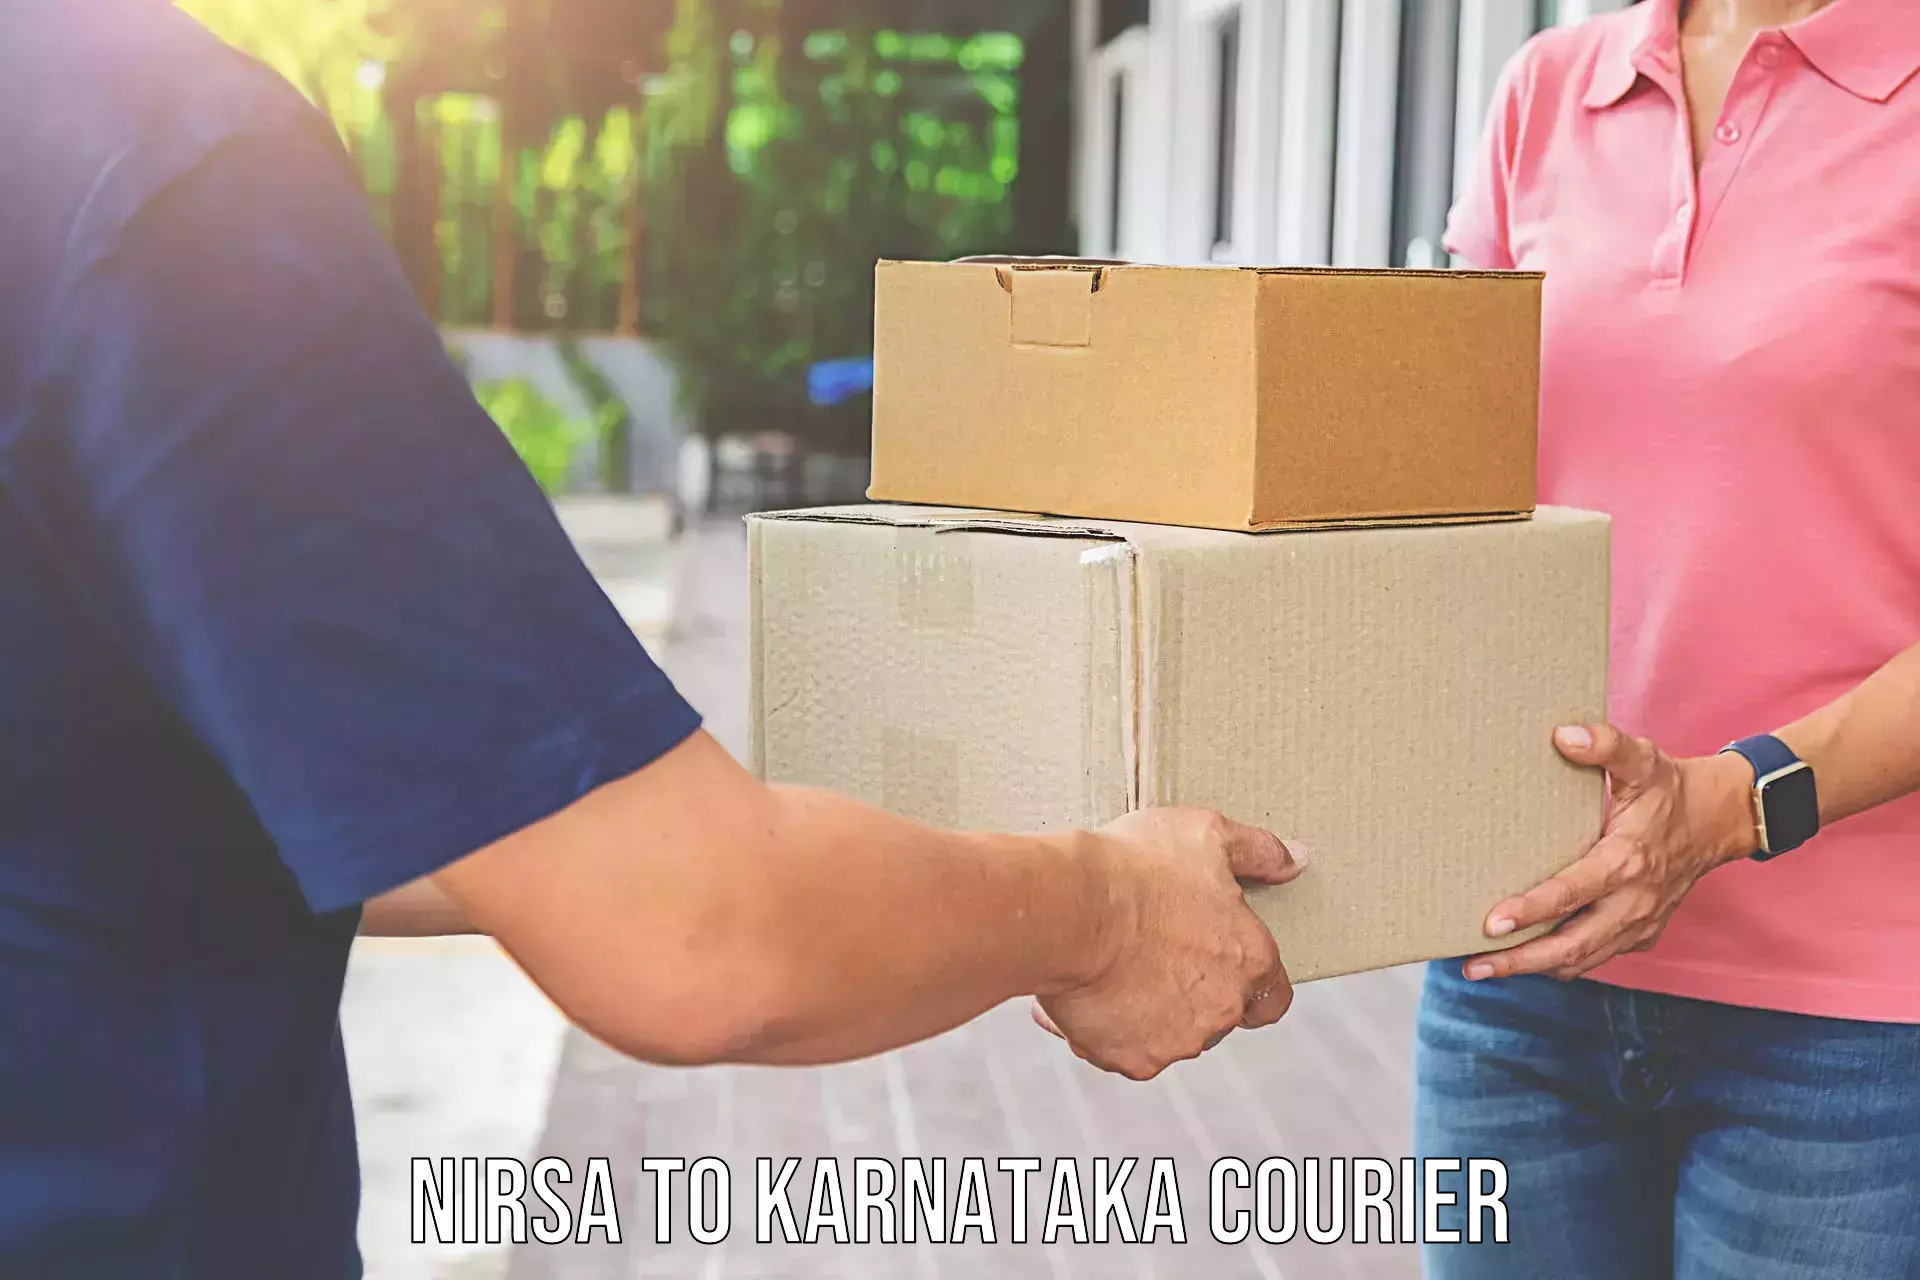 Professional furniture transport Nirsa to Karnataka